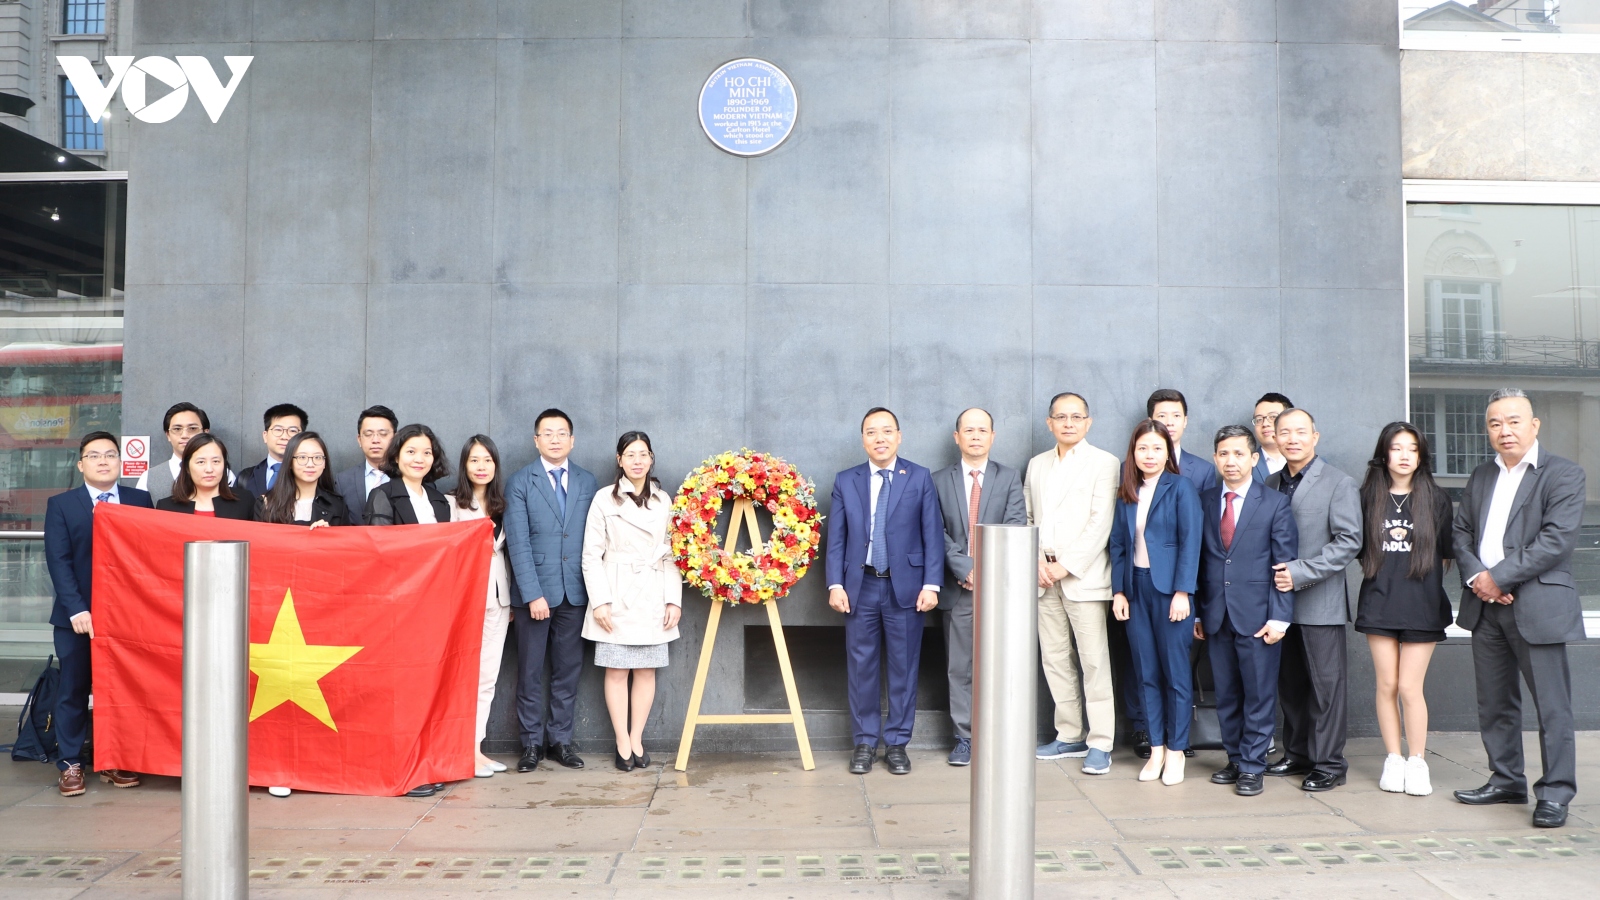 Dâng hoa tưởng niệm nhân kỷ niệm sinh nhật lần thứ 132 của Chủ tịch Hồ Chí Minh tại London